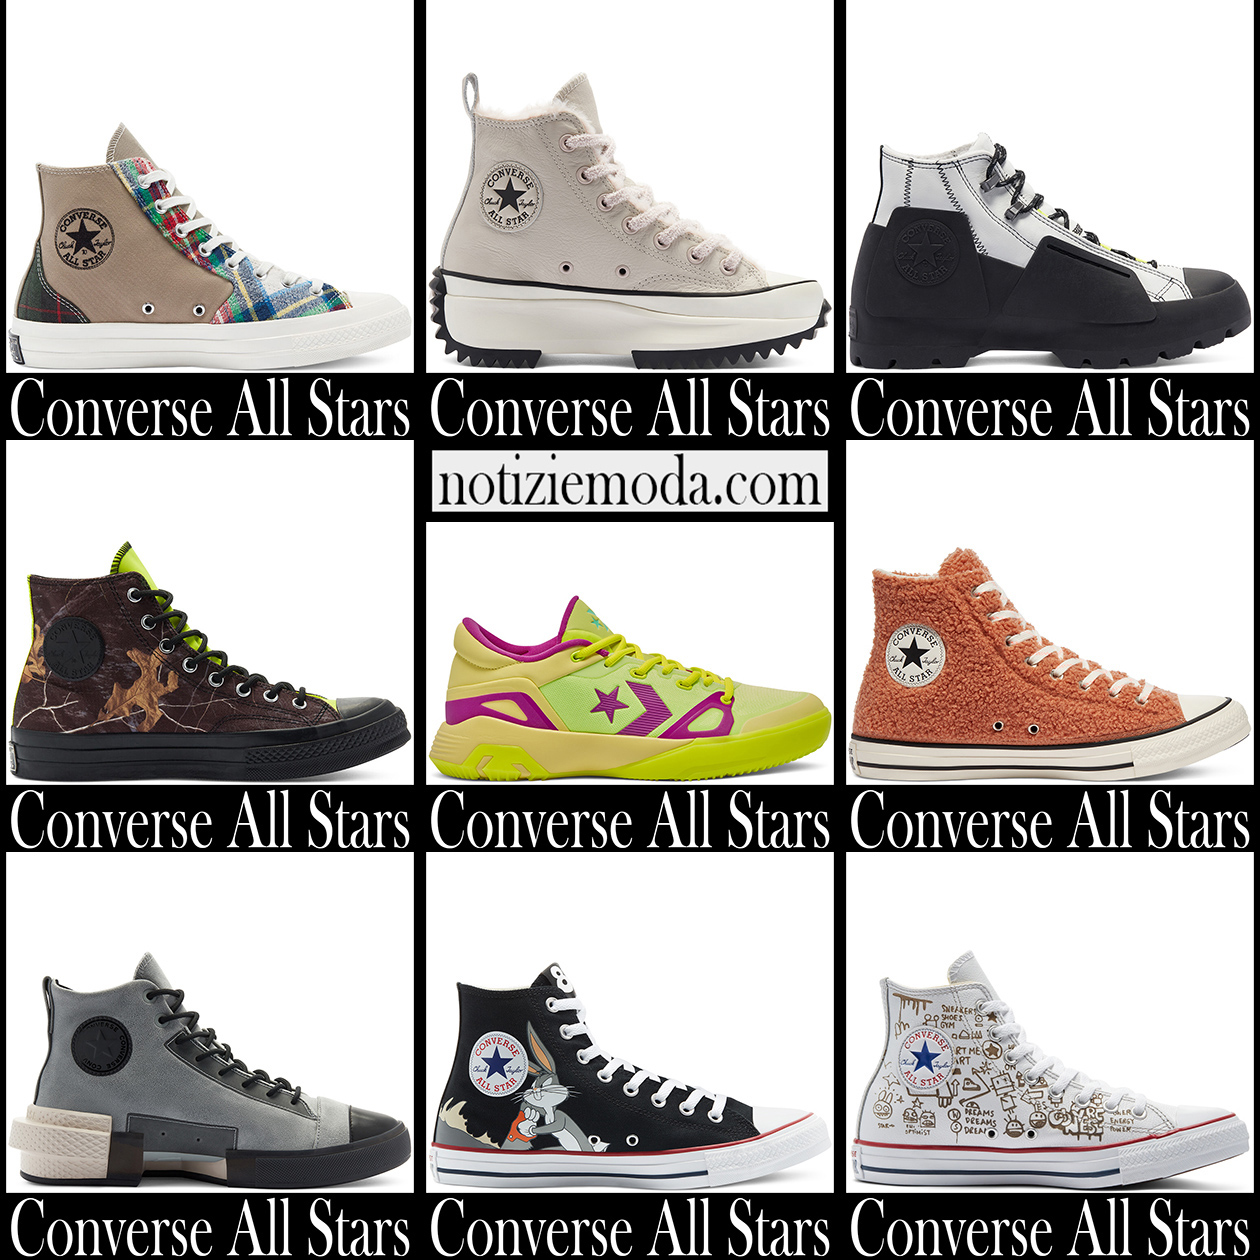 Nuovi arrivi sneakers Converse 2021 All Stars uomo لوحات اكريليك